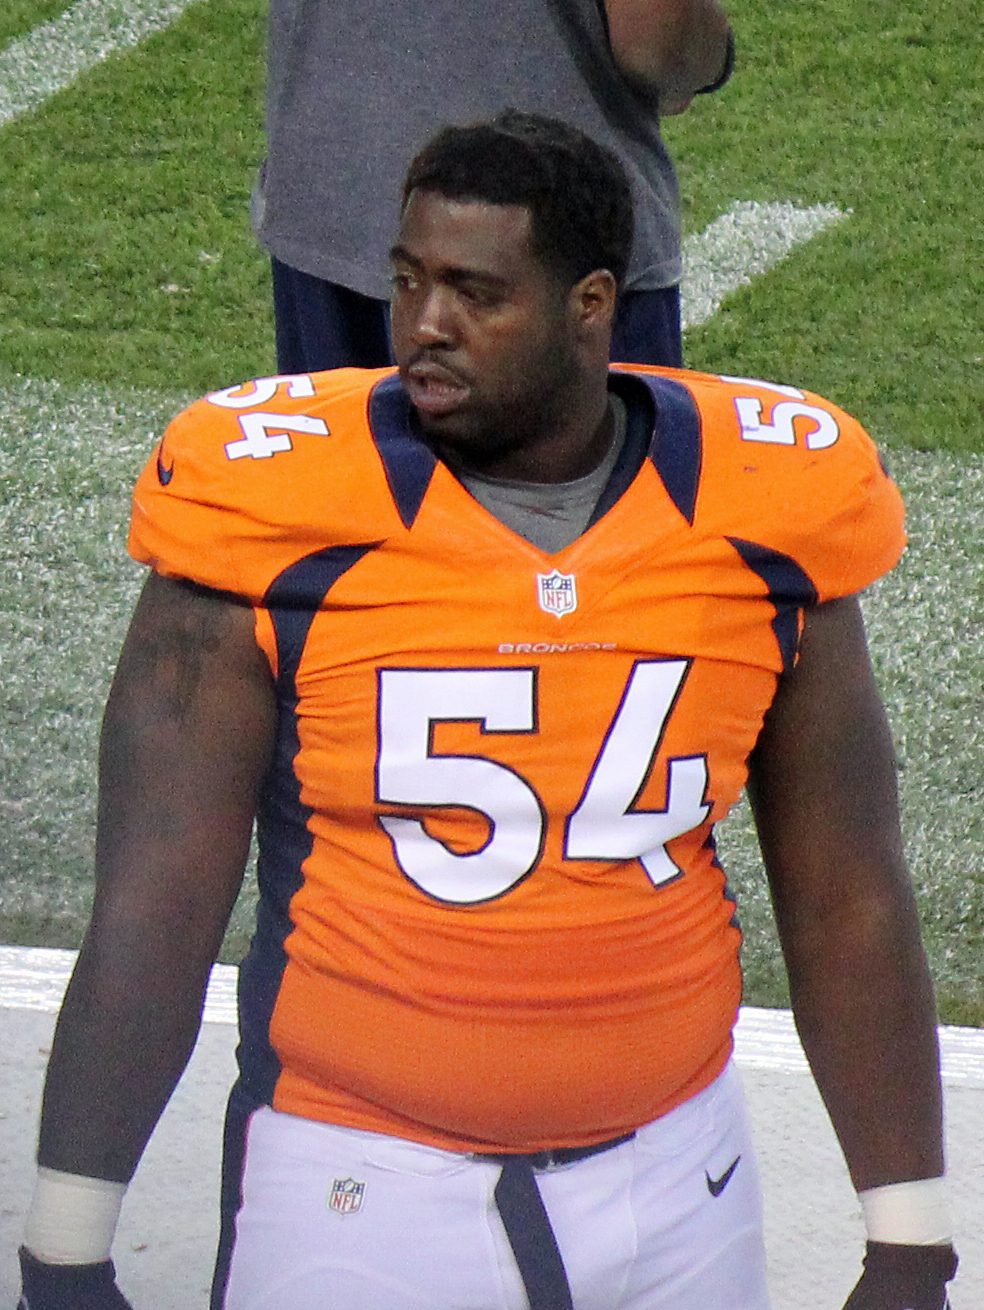 Davis in the 2012 NFL season